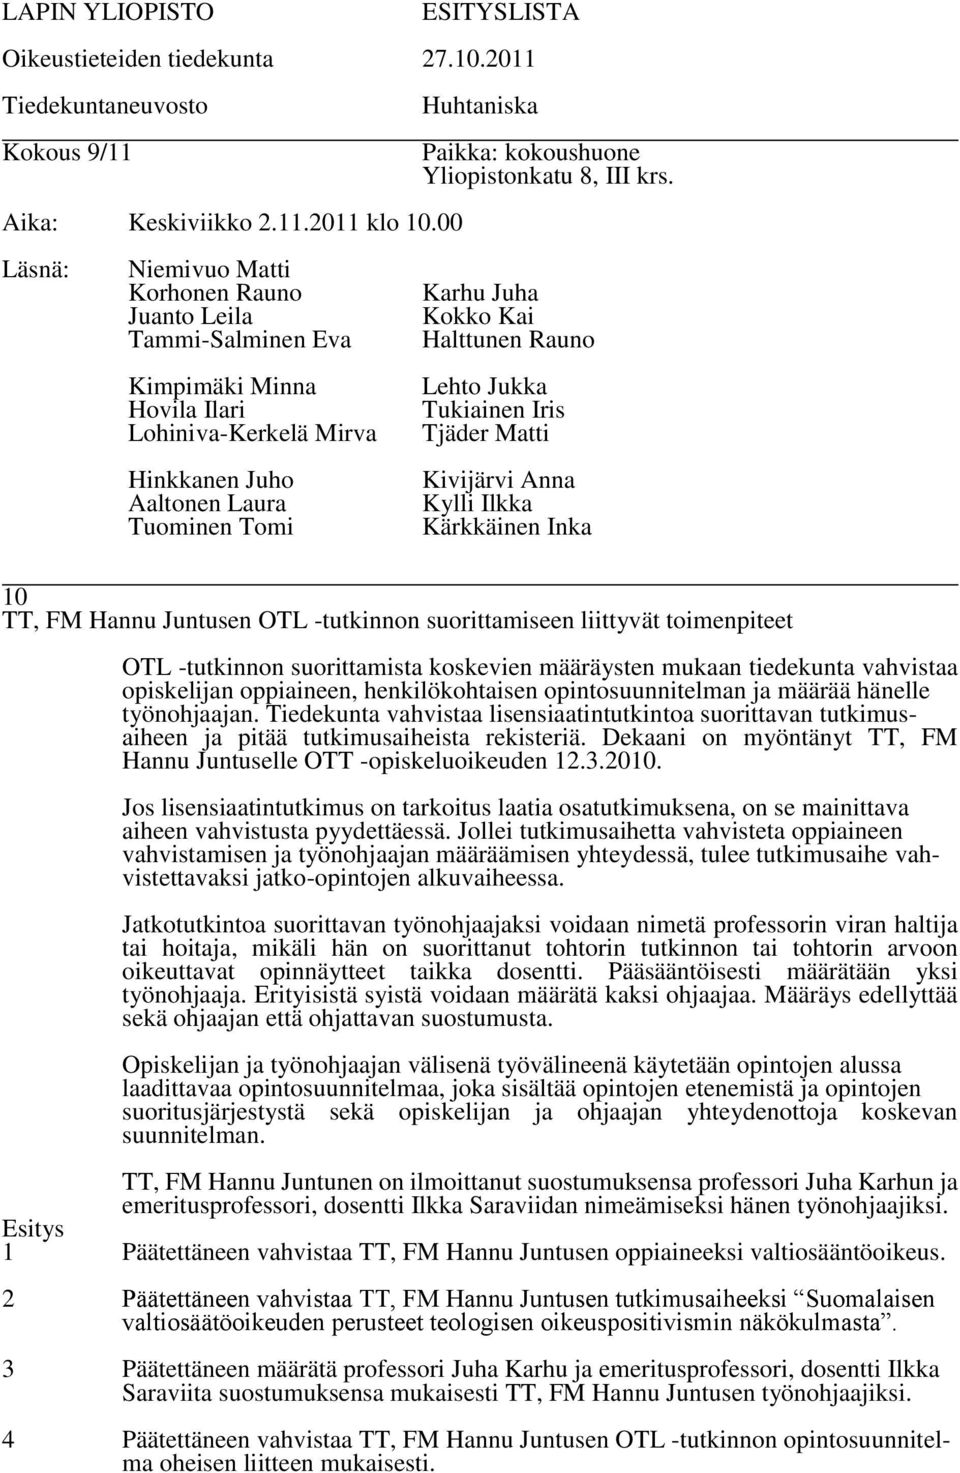 Dekaani on myöntänyt TT, FM Hannu Juntuselle OTT -opiskeluoikeuden 12.3.2010. Jos lisensiaatintutkimus on tarkoitus laatia osatutkimuksena, on se mainittava aiheen vahvistusta pyydettäessä.